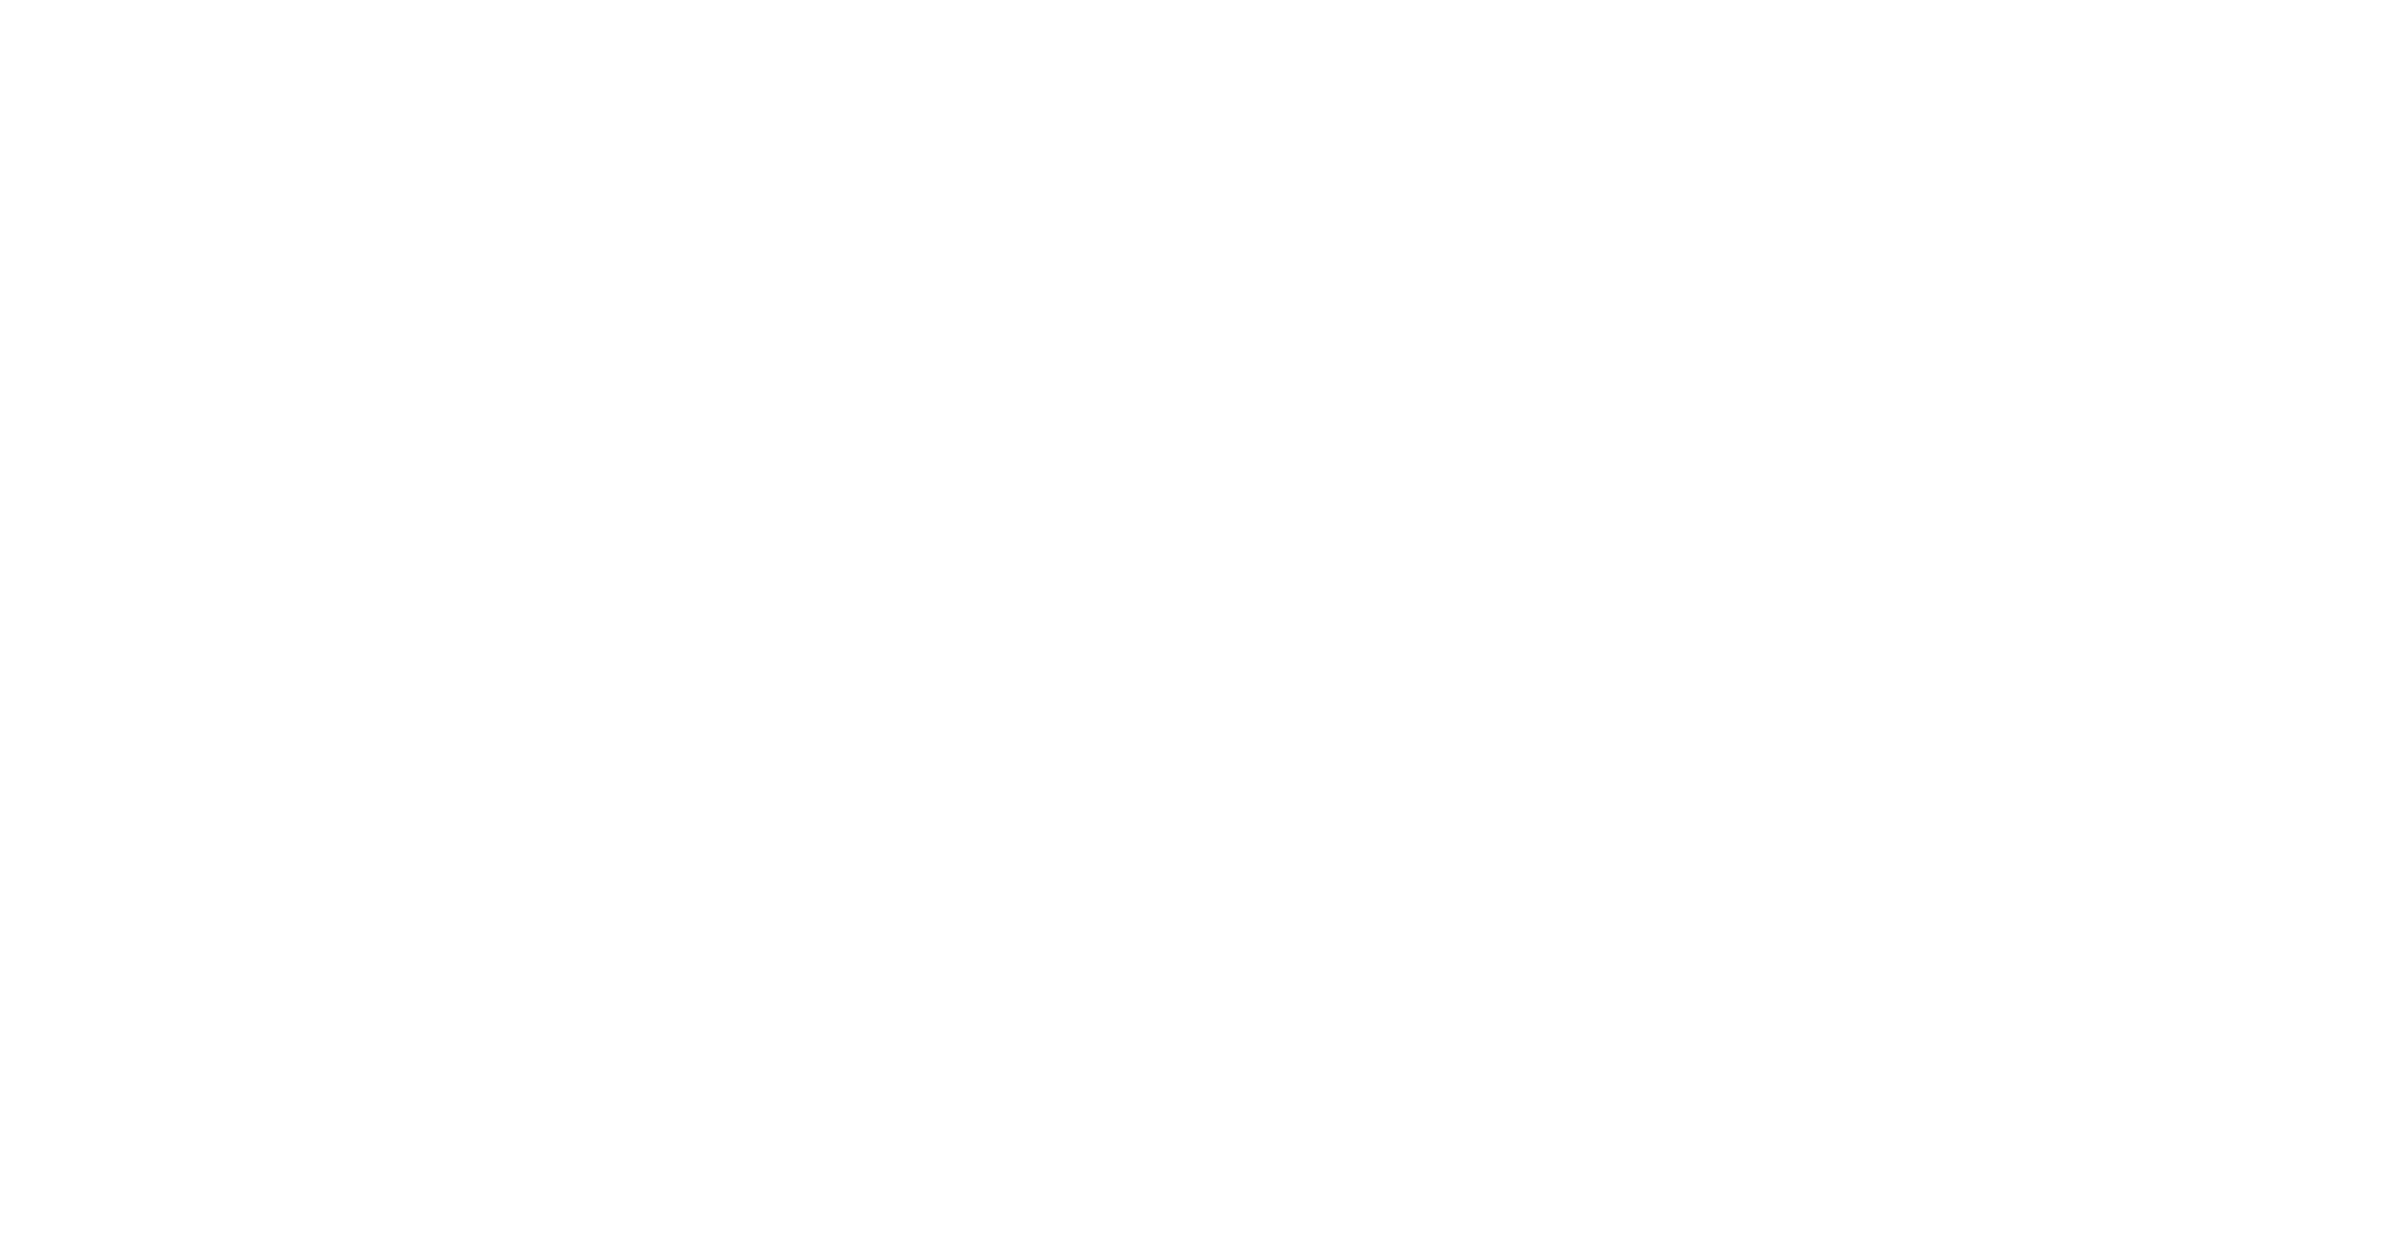 B. Braun